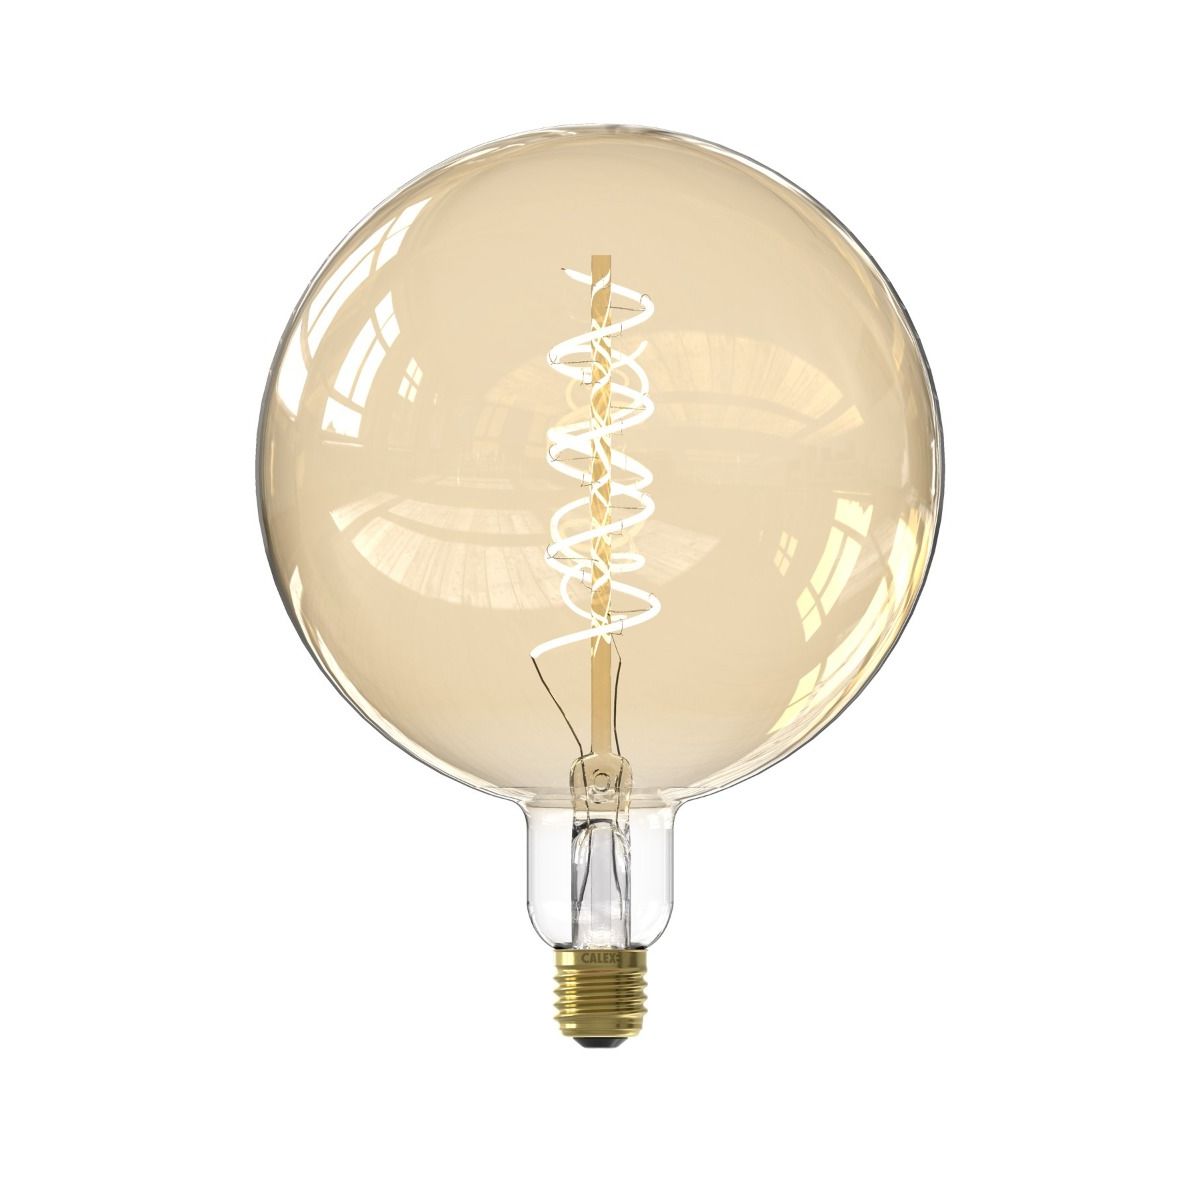 Meter schieten Het is de bedoeling dat Calex Smart XXL LED lamp - Ø 20 x 26,5 cm - E27 - 5W - dimfunctie via app -  2000K - goud